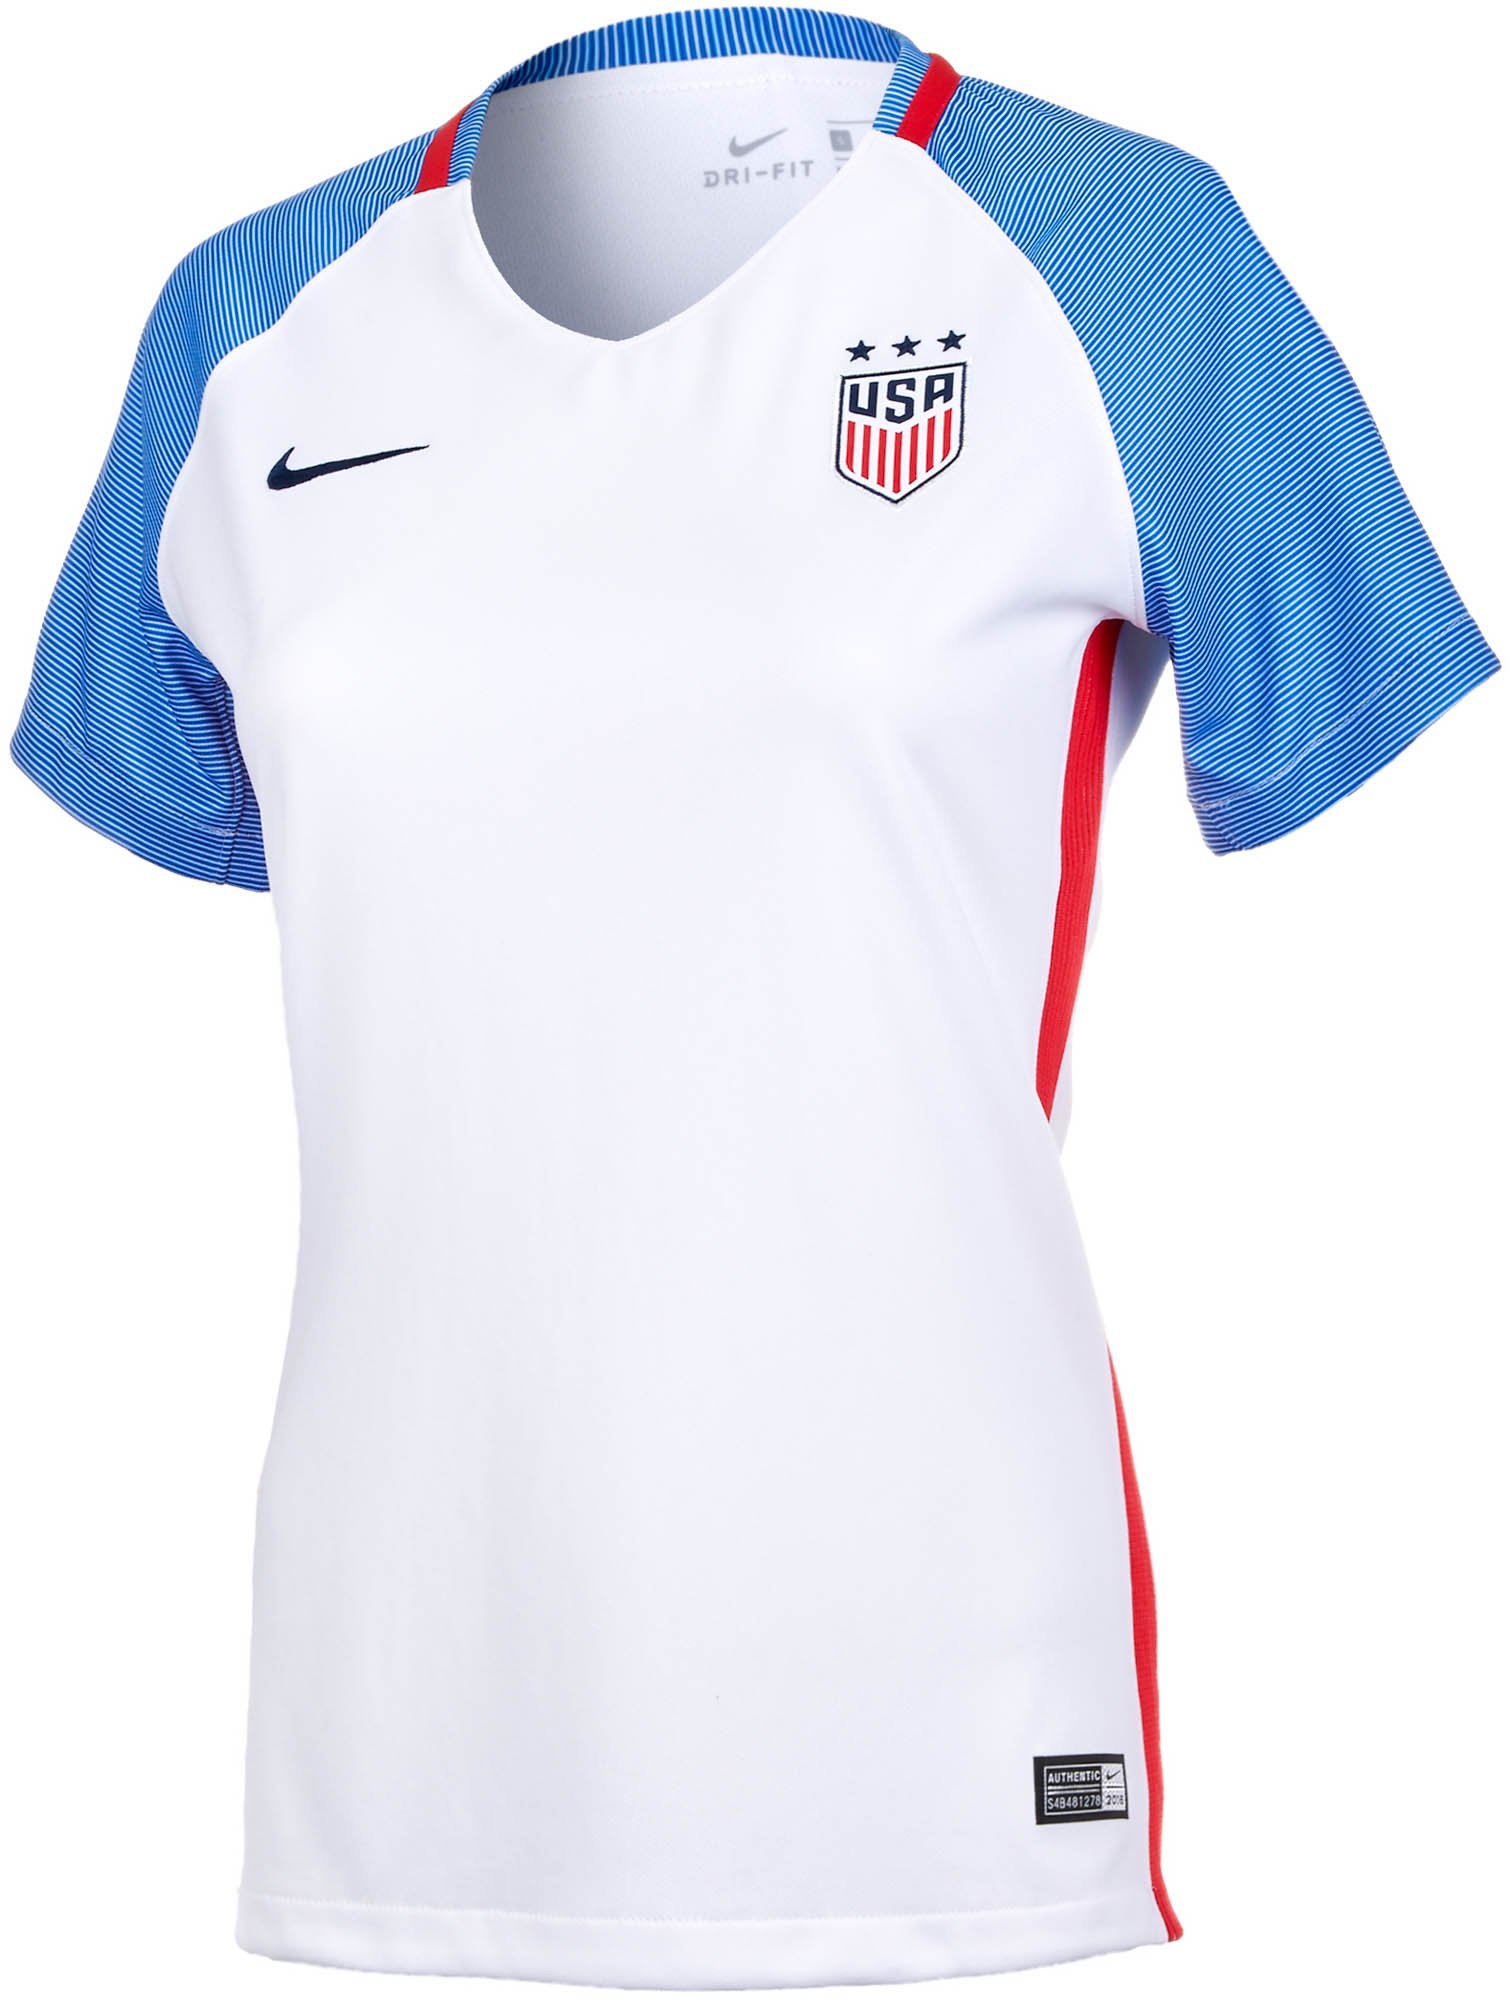 Nike USWNT NWSL Washington Spirit 2016 Women's Soccer Jersey